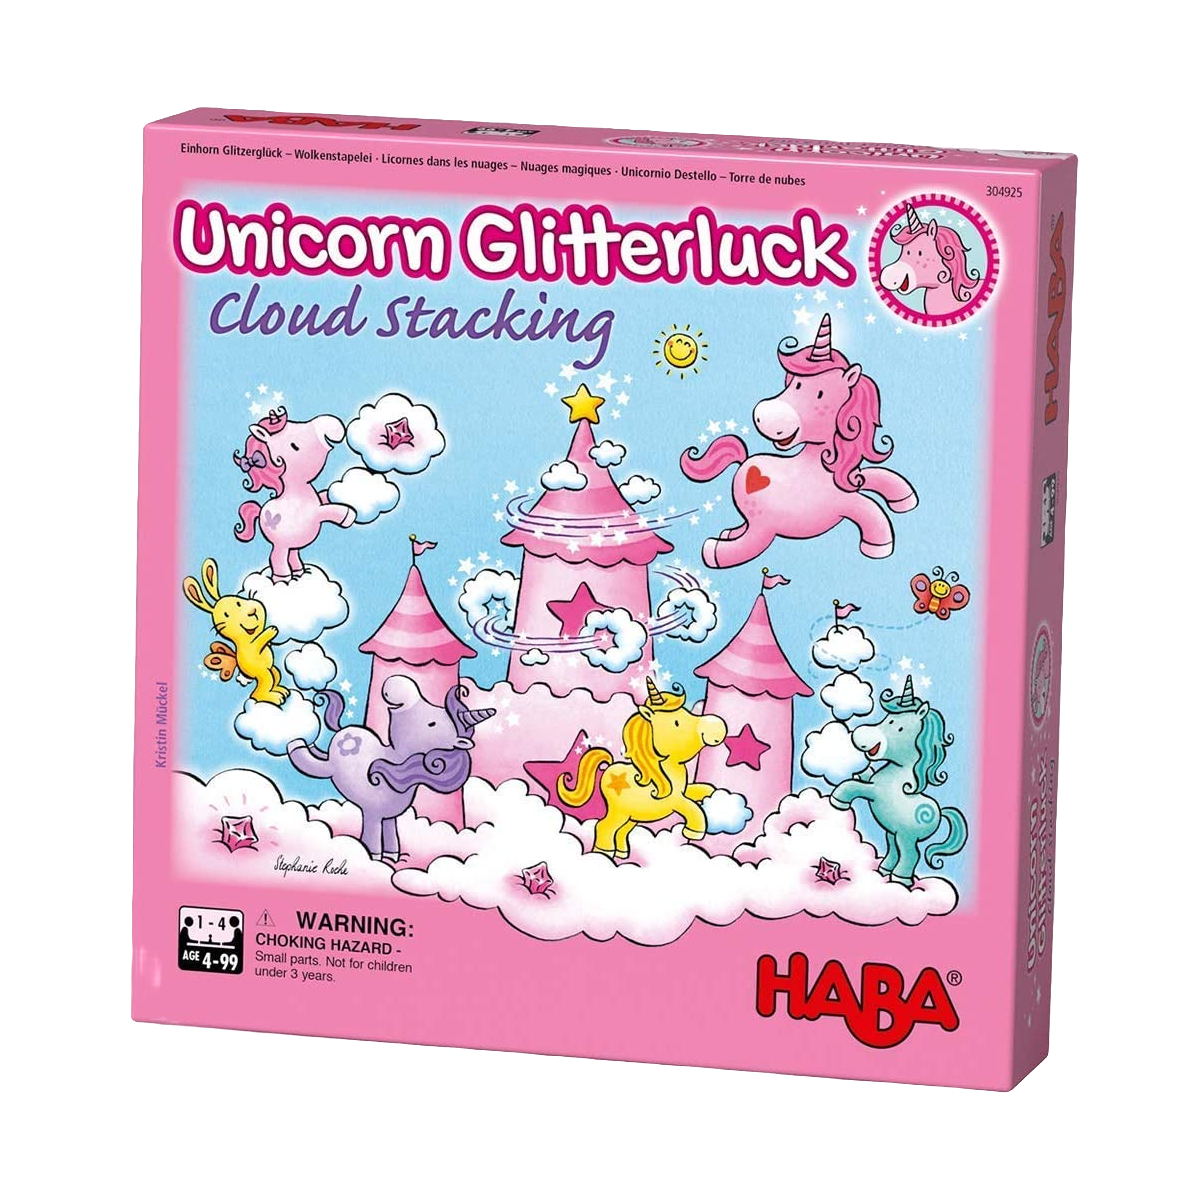 Unicorn Glitterluck: Cloud Stacking